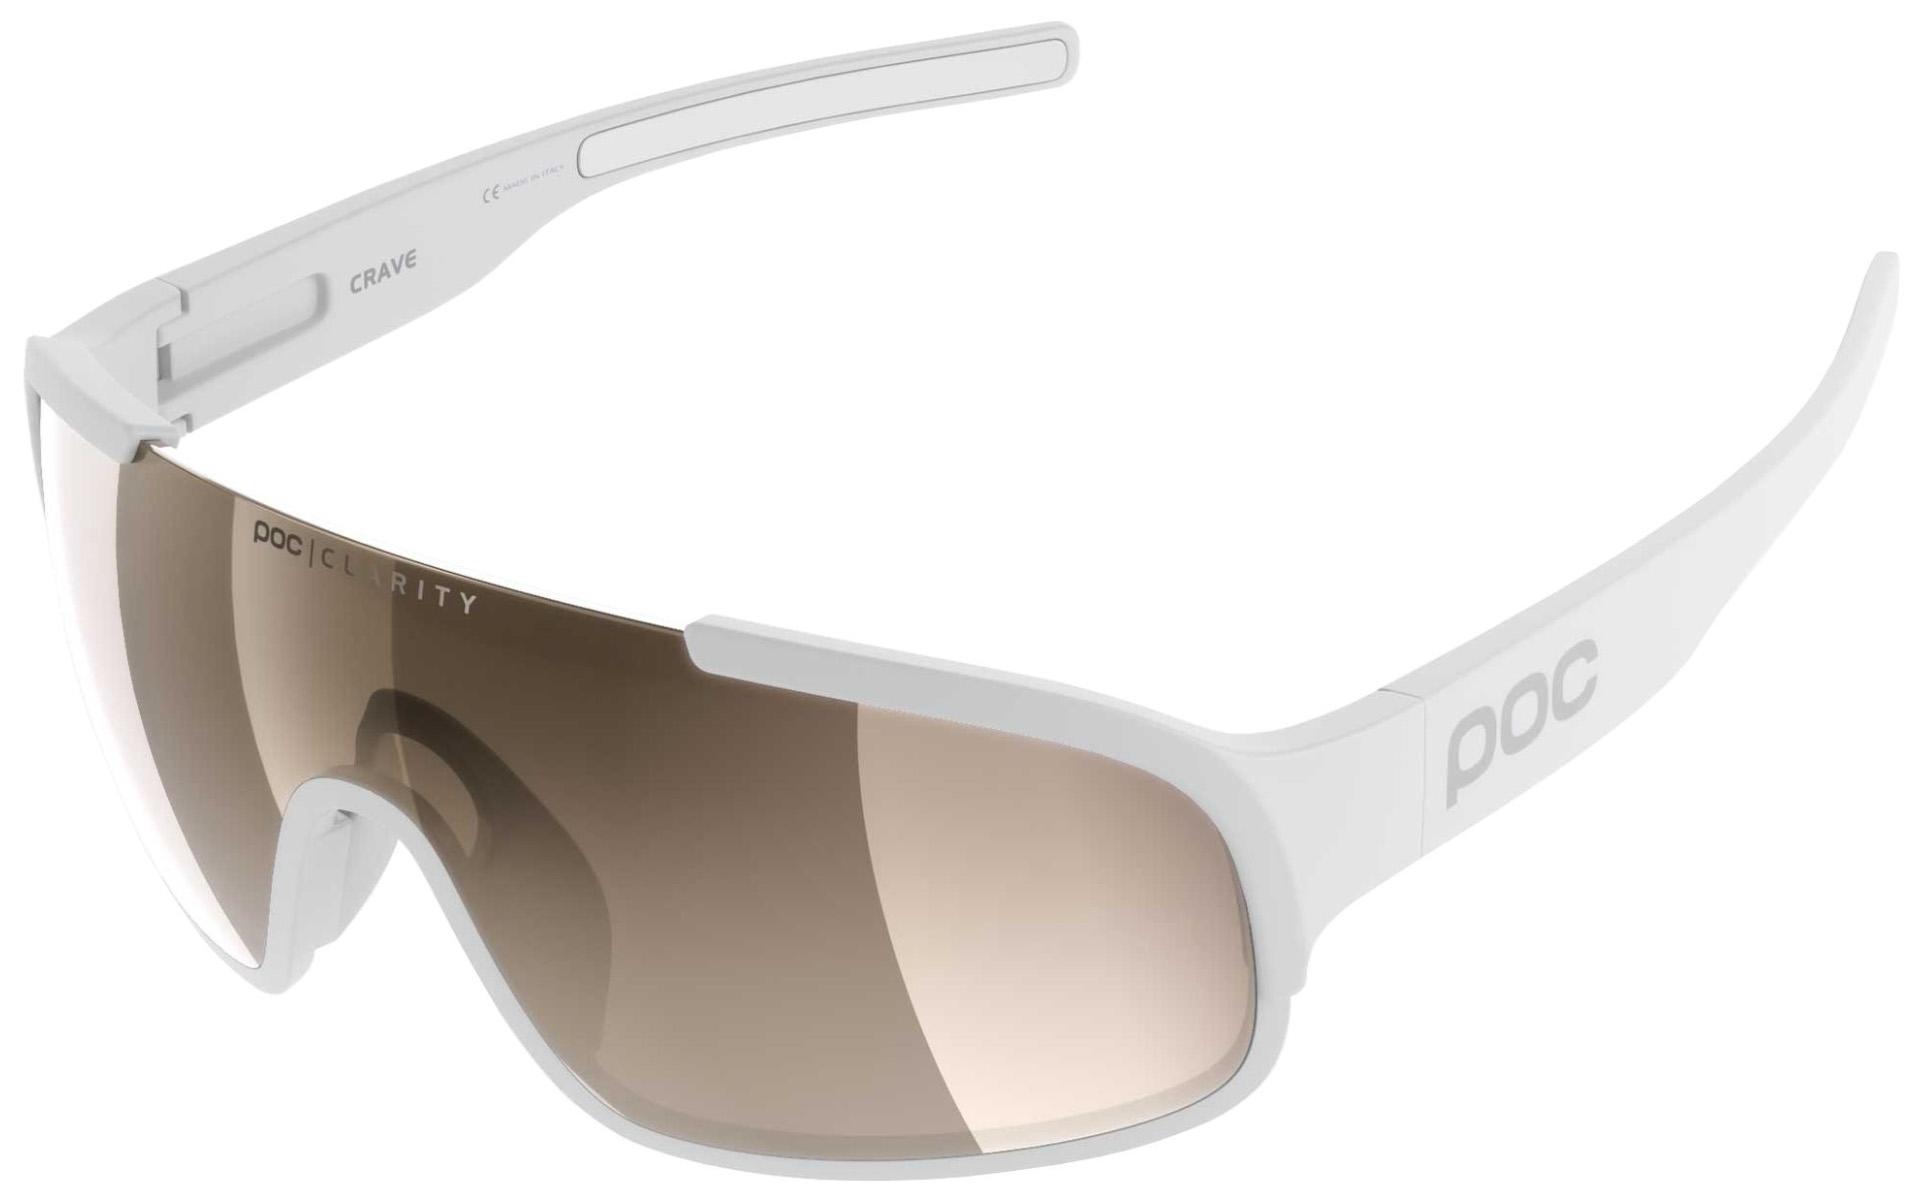 Poc Crave Sunglasses - Hydrogen White/silver Mirror